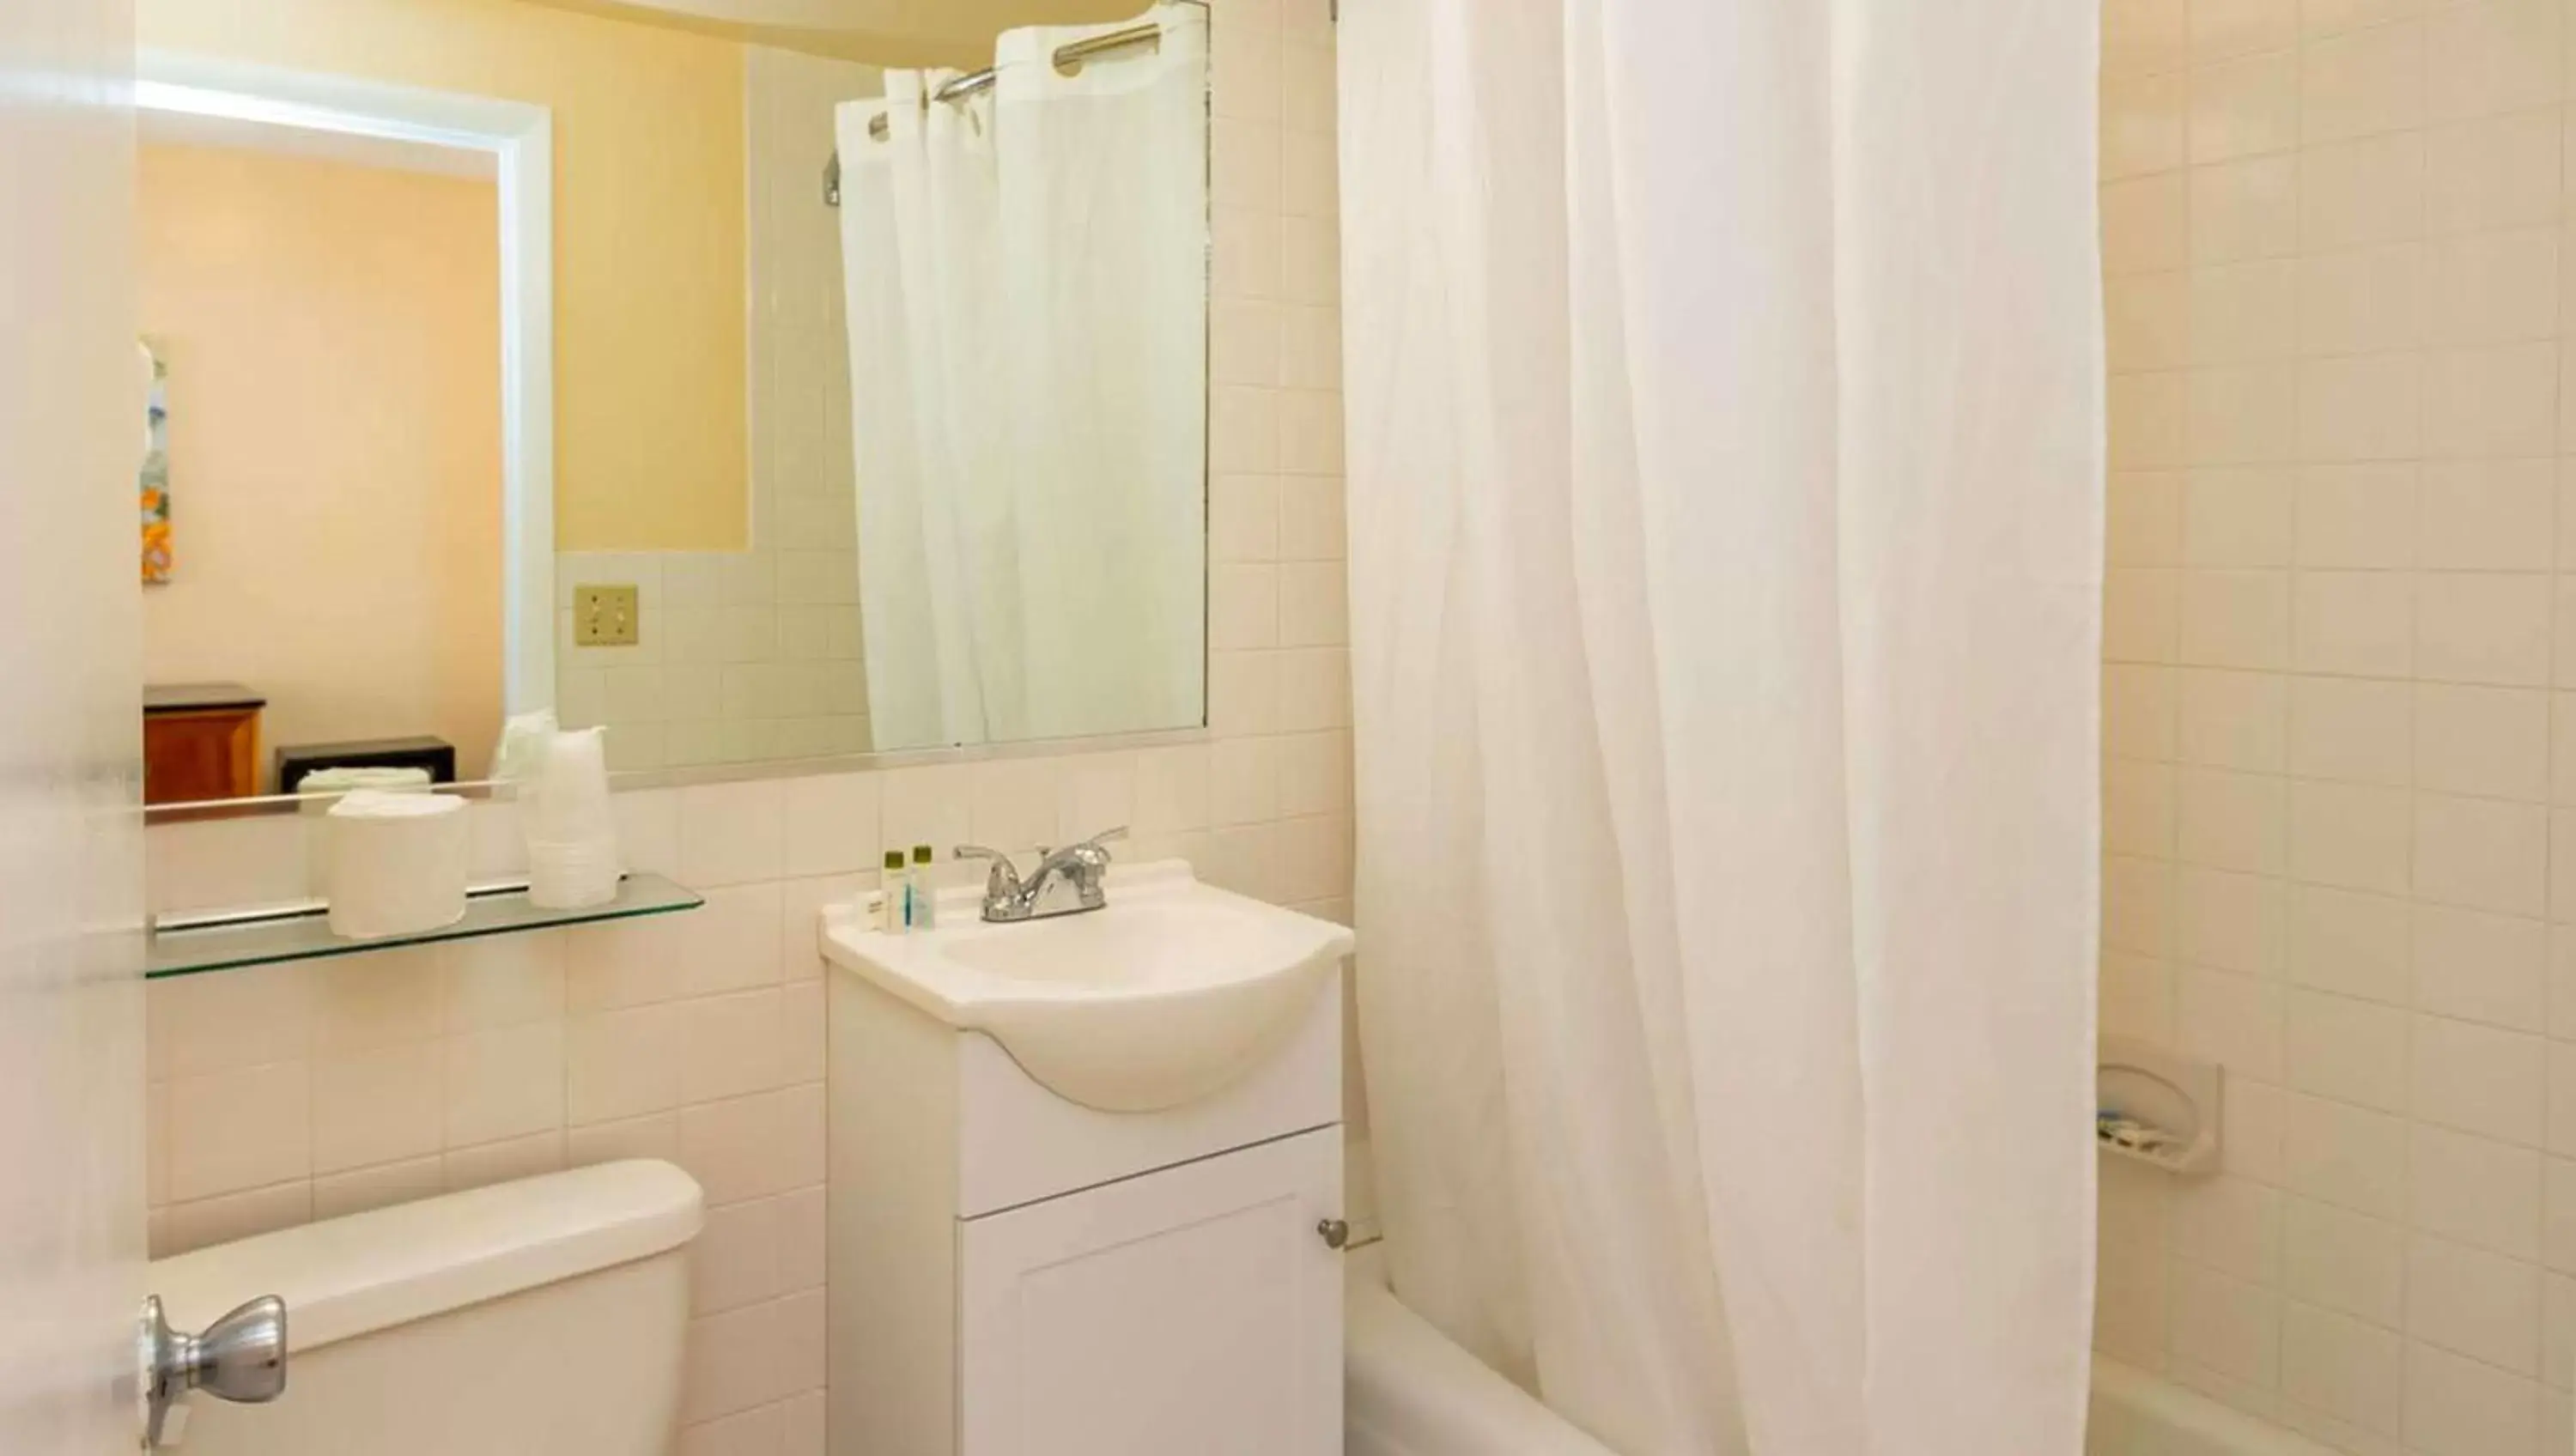 Bathroom in Belleair Beach Resort Motel